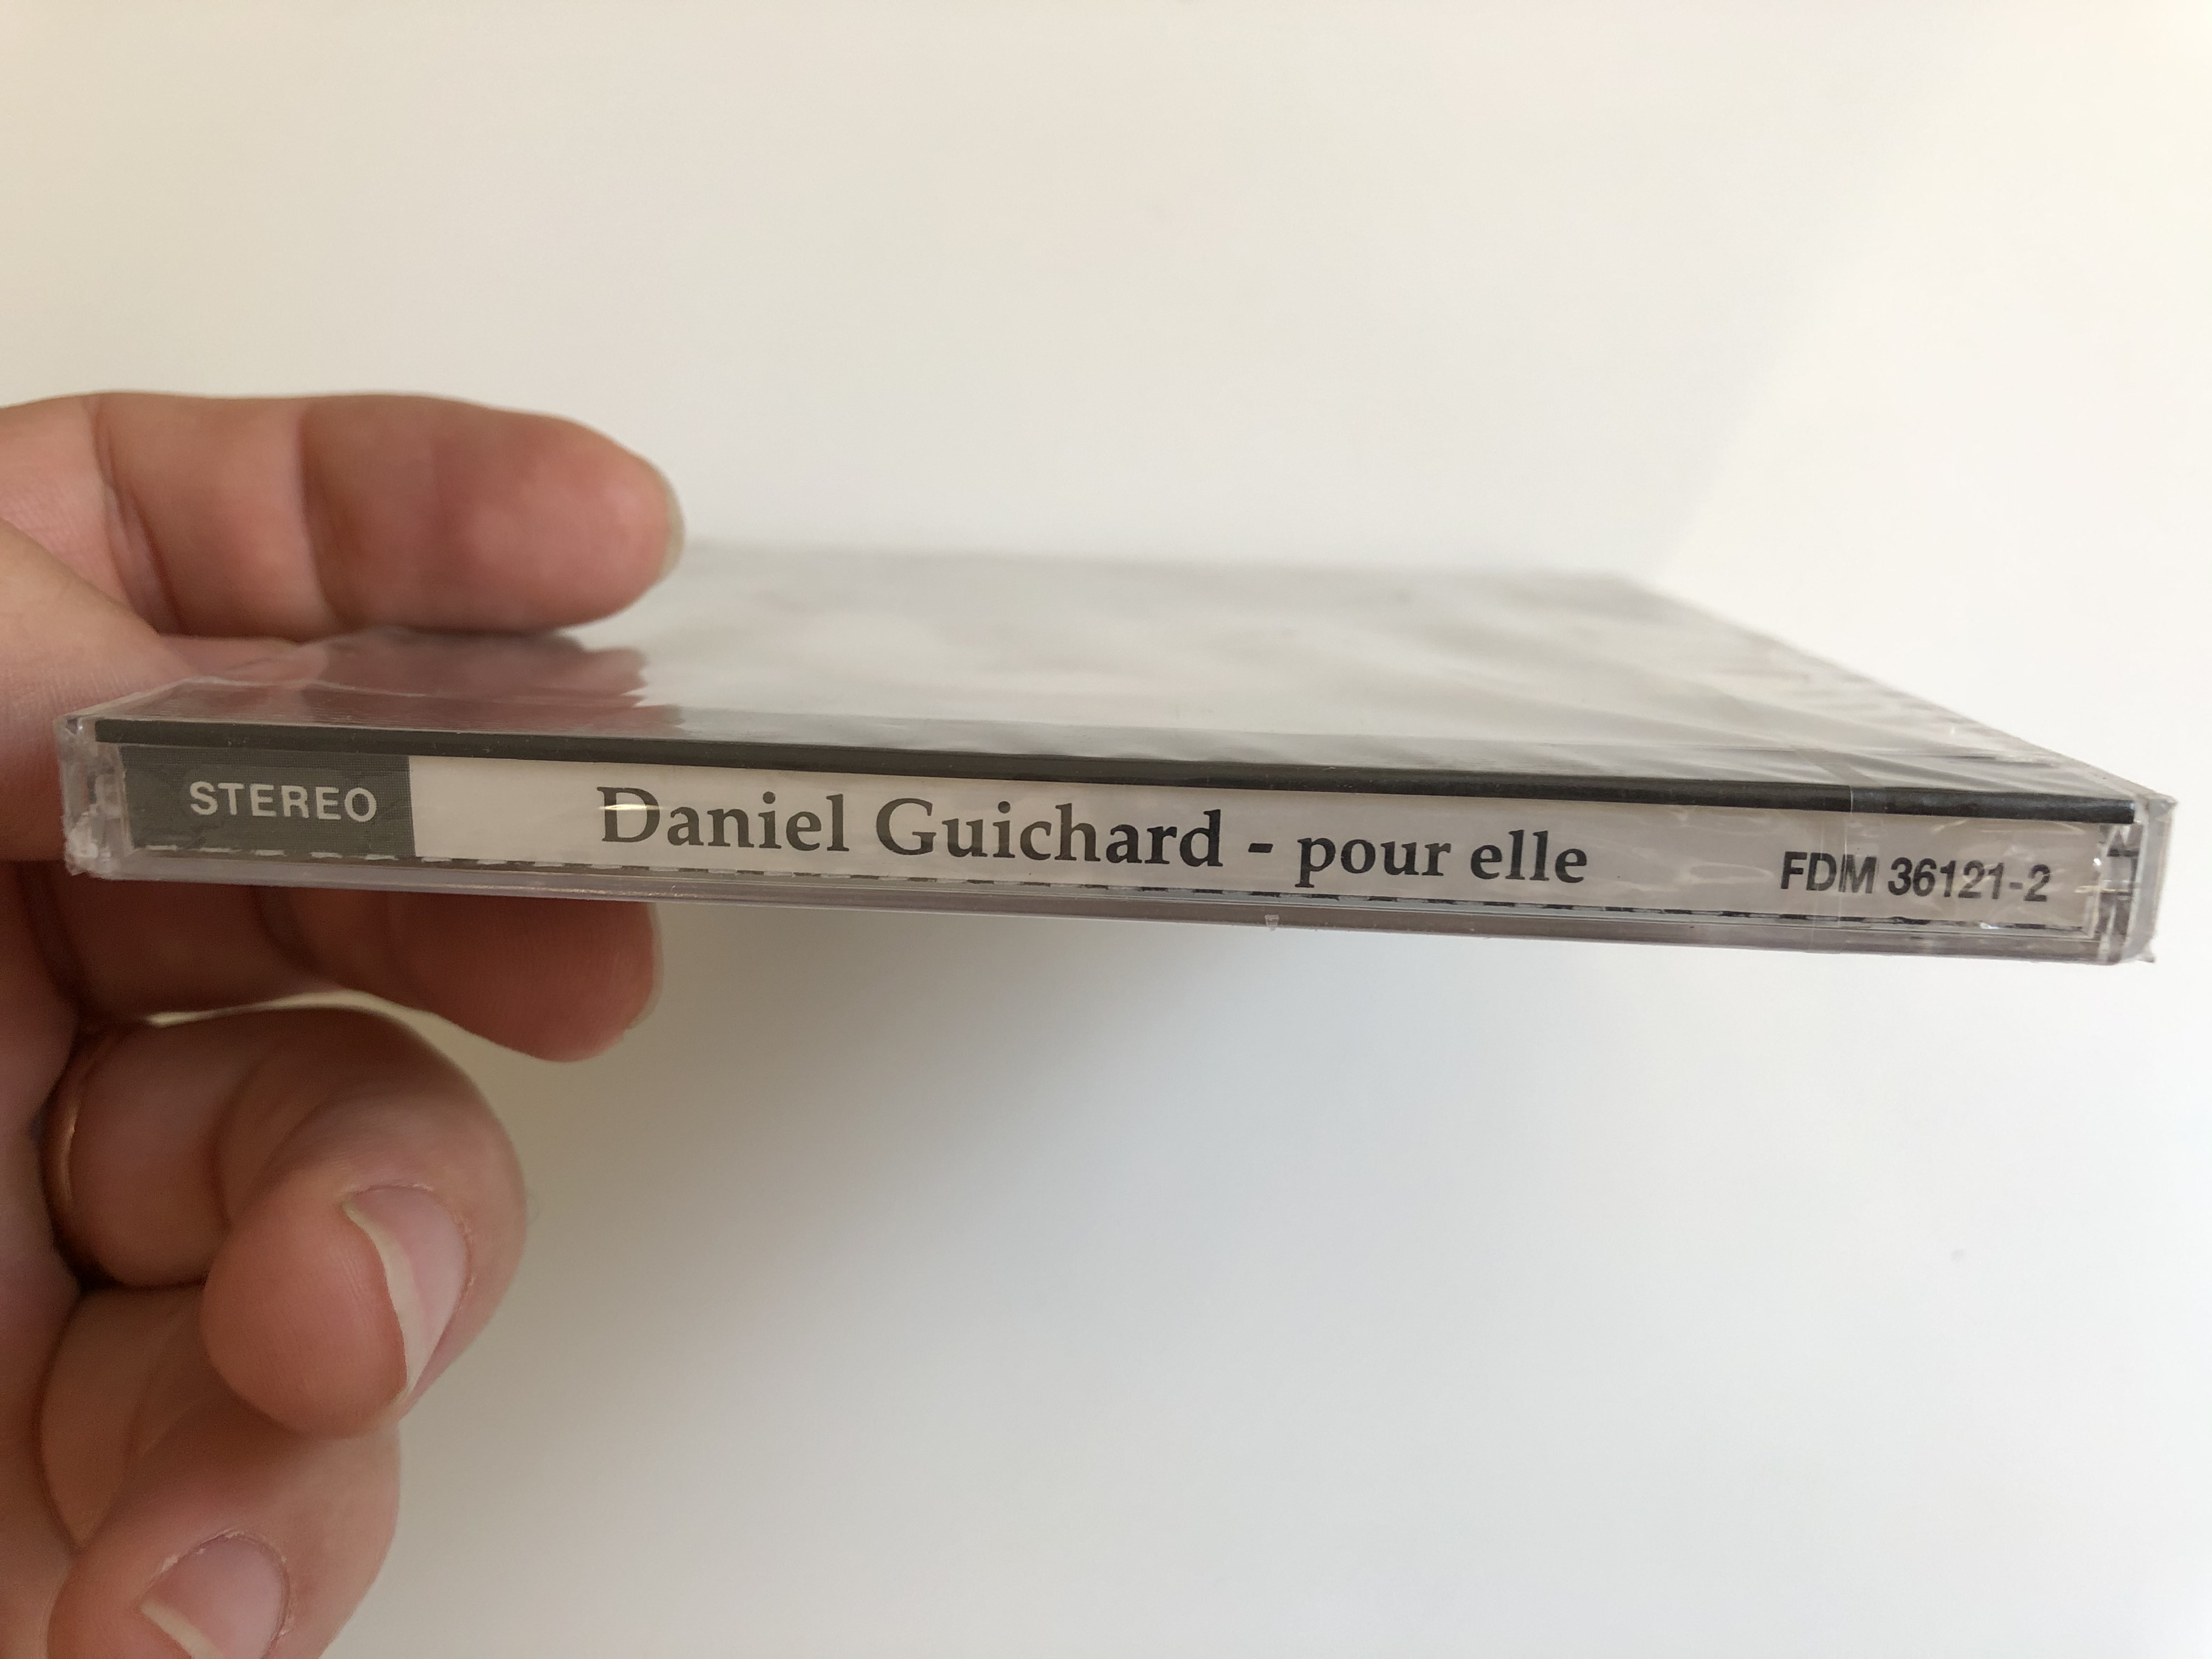 daniel-guichard-pour-elle-disques-dreyfus-audio-cd-stereo-fdm-36121-2-3-.jpg